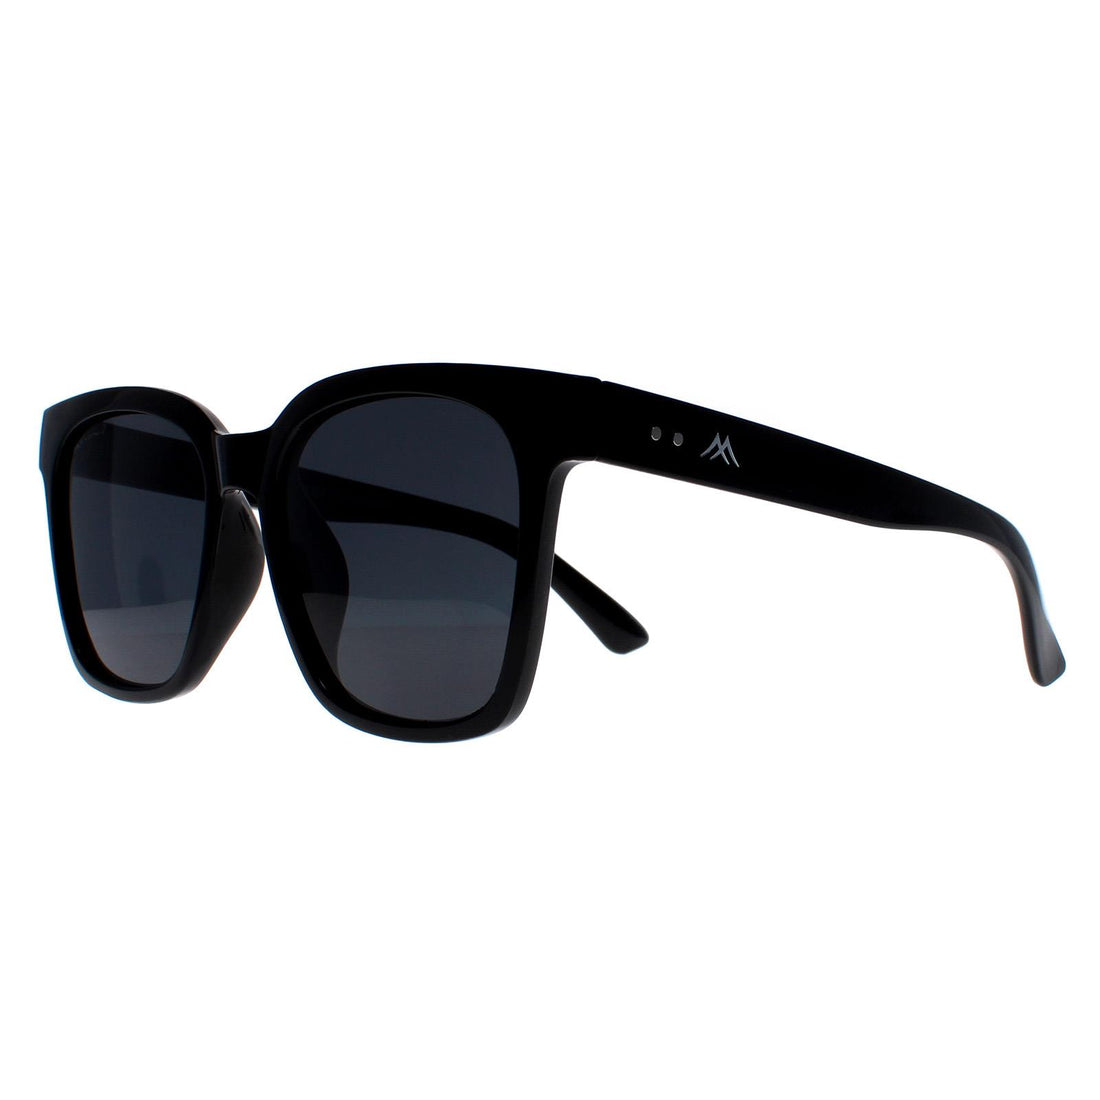 Montana Sunglasses MP72 Shiny Black Grey Polarized